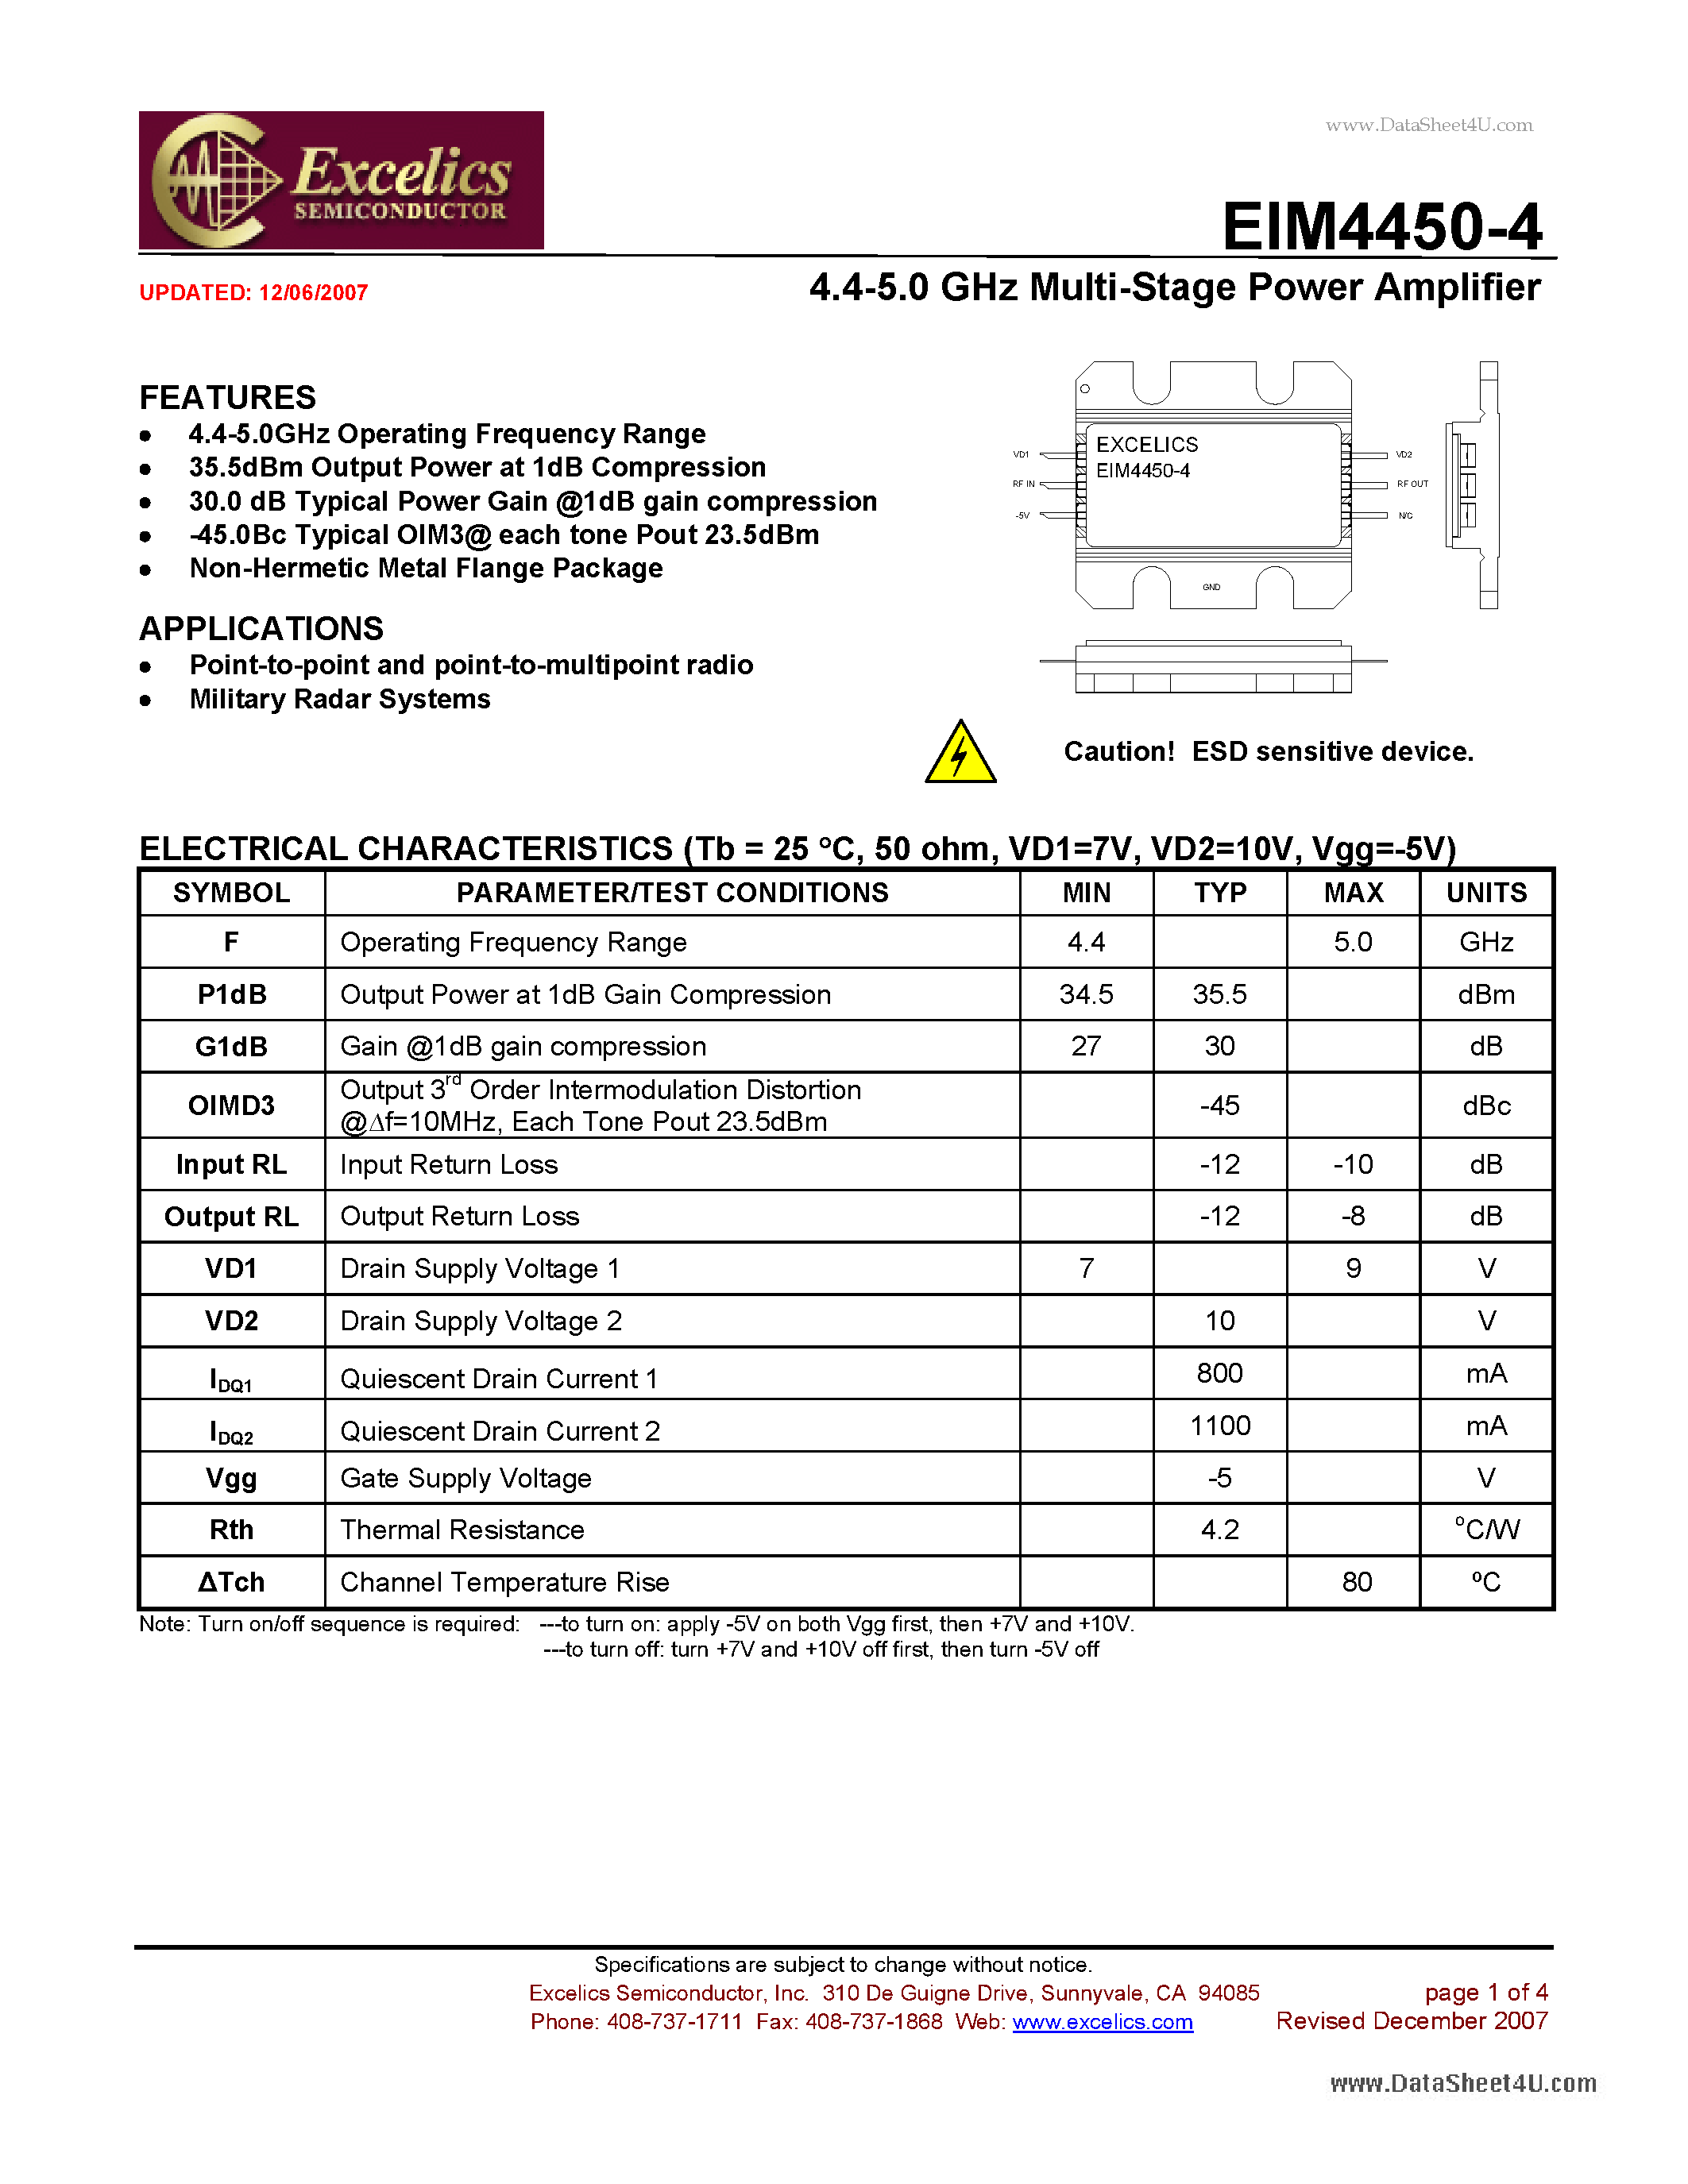 Datasheet EIM4450-4 - 4.4-5.0 GHz Multi-Stage Power Amplifier page 1